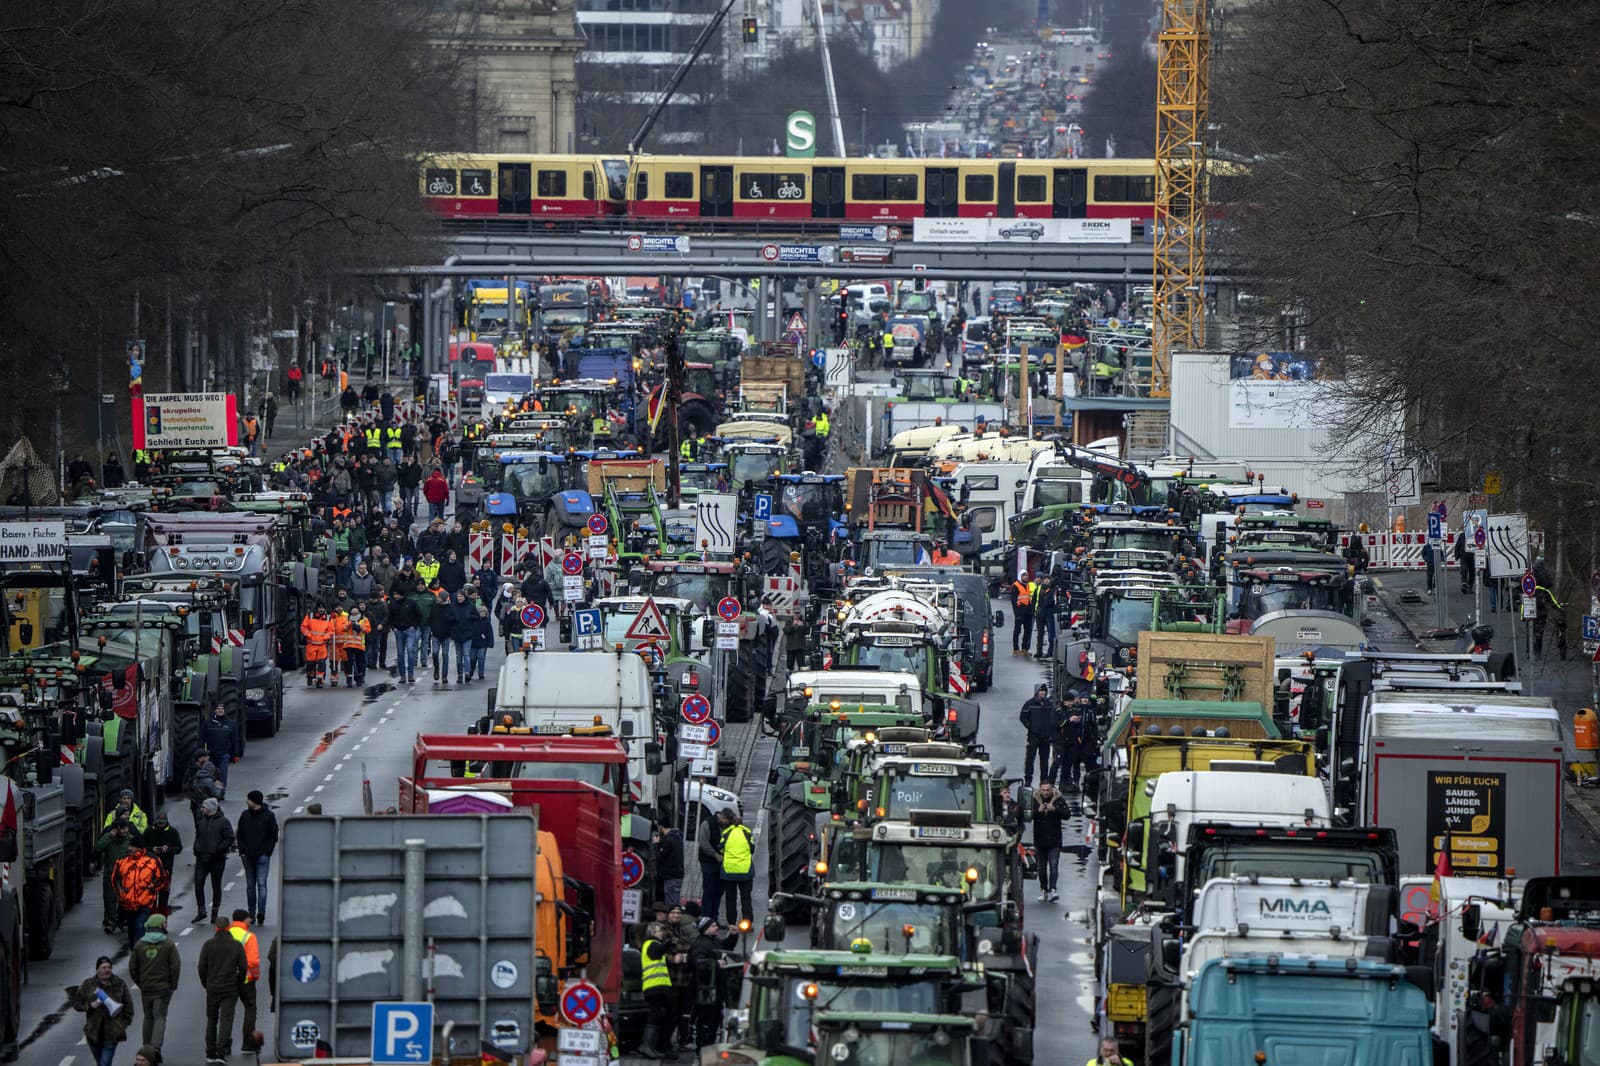 Nespokojní farmári protestujú v nemeckých uliciach